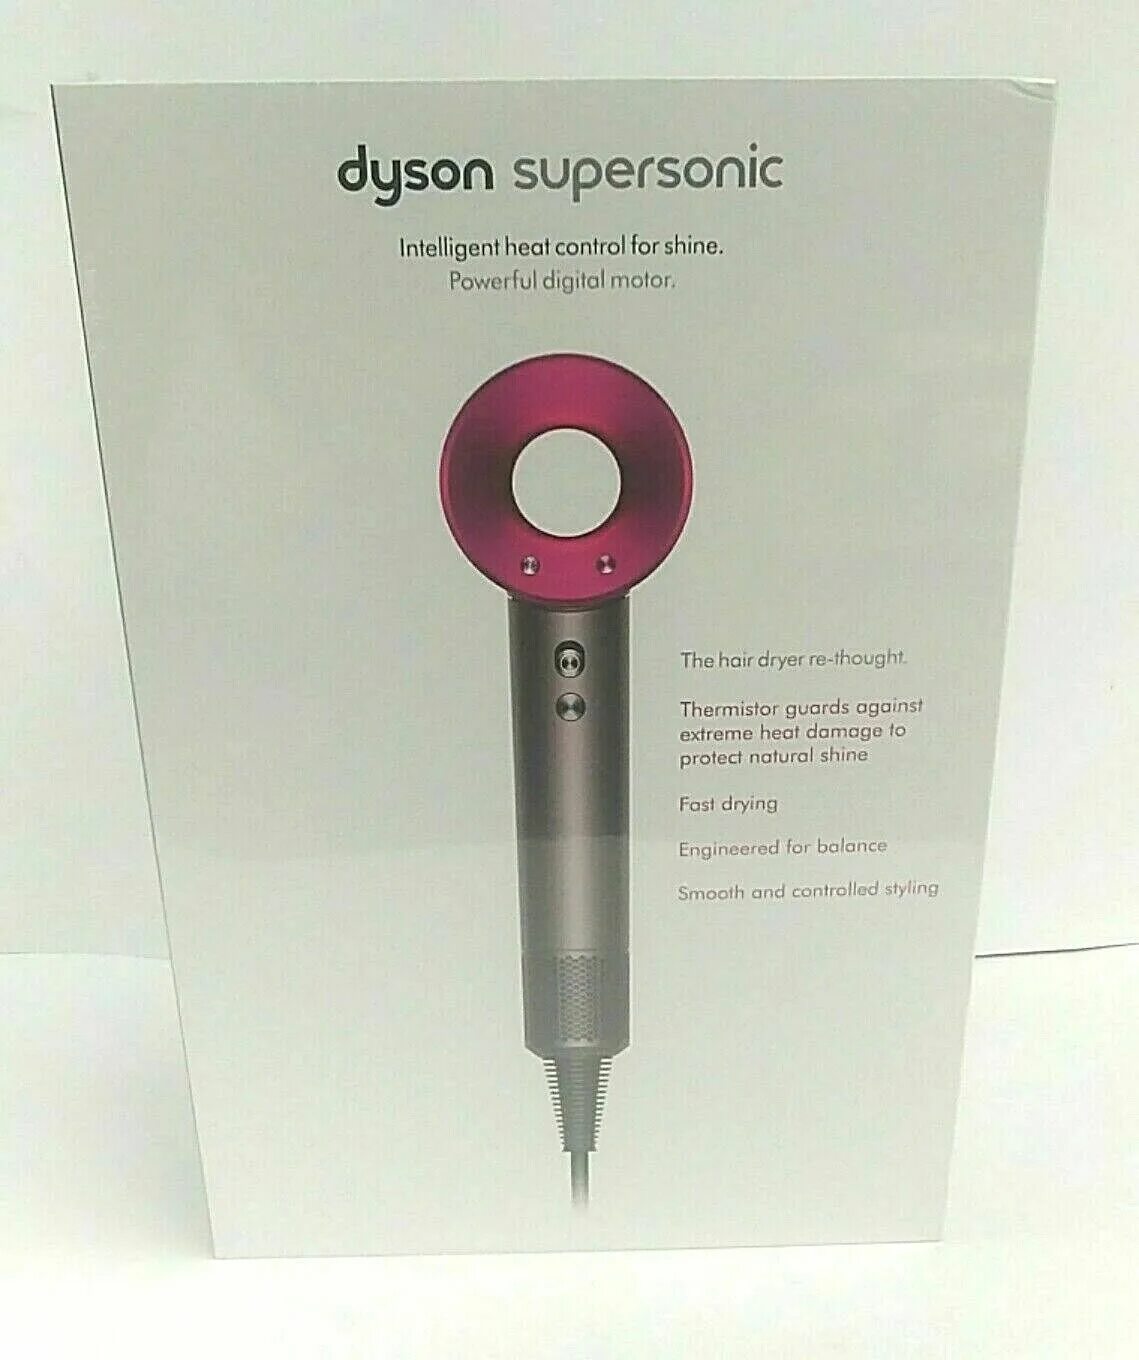 Фен дайсон 15. Фен Дайсон суперсоник hd07. Фен Dyson Fuchsia. Dyson Supersonic hair Dryer Iron Fuchsia hd08. Фен Дайсон Supersonic фуксия.